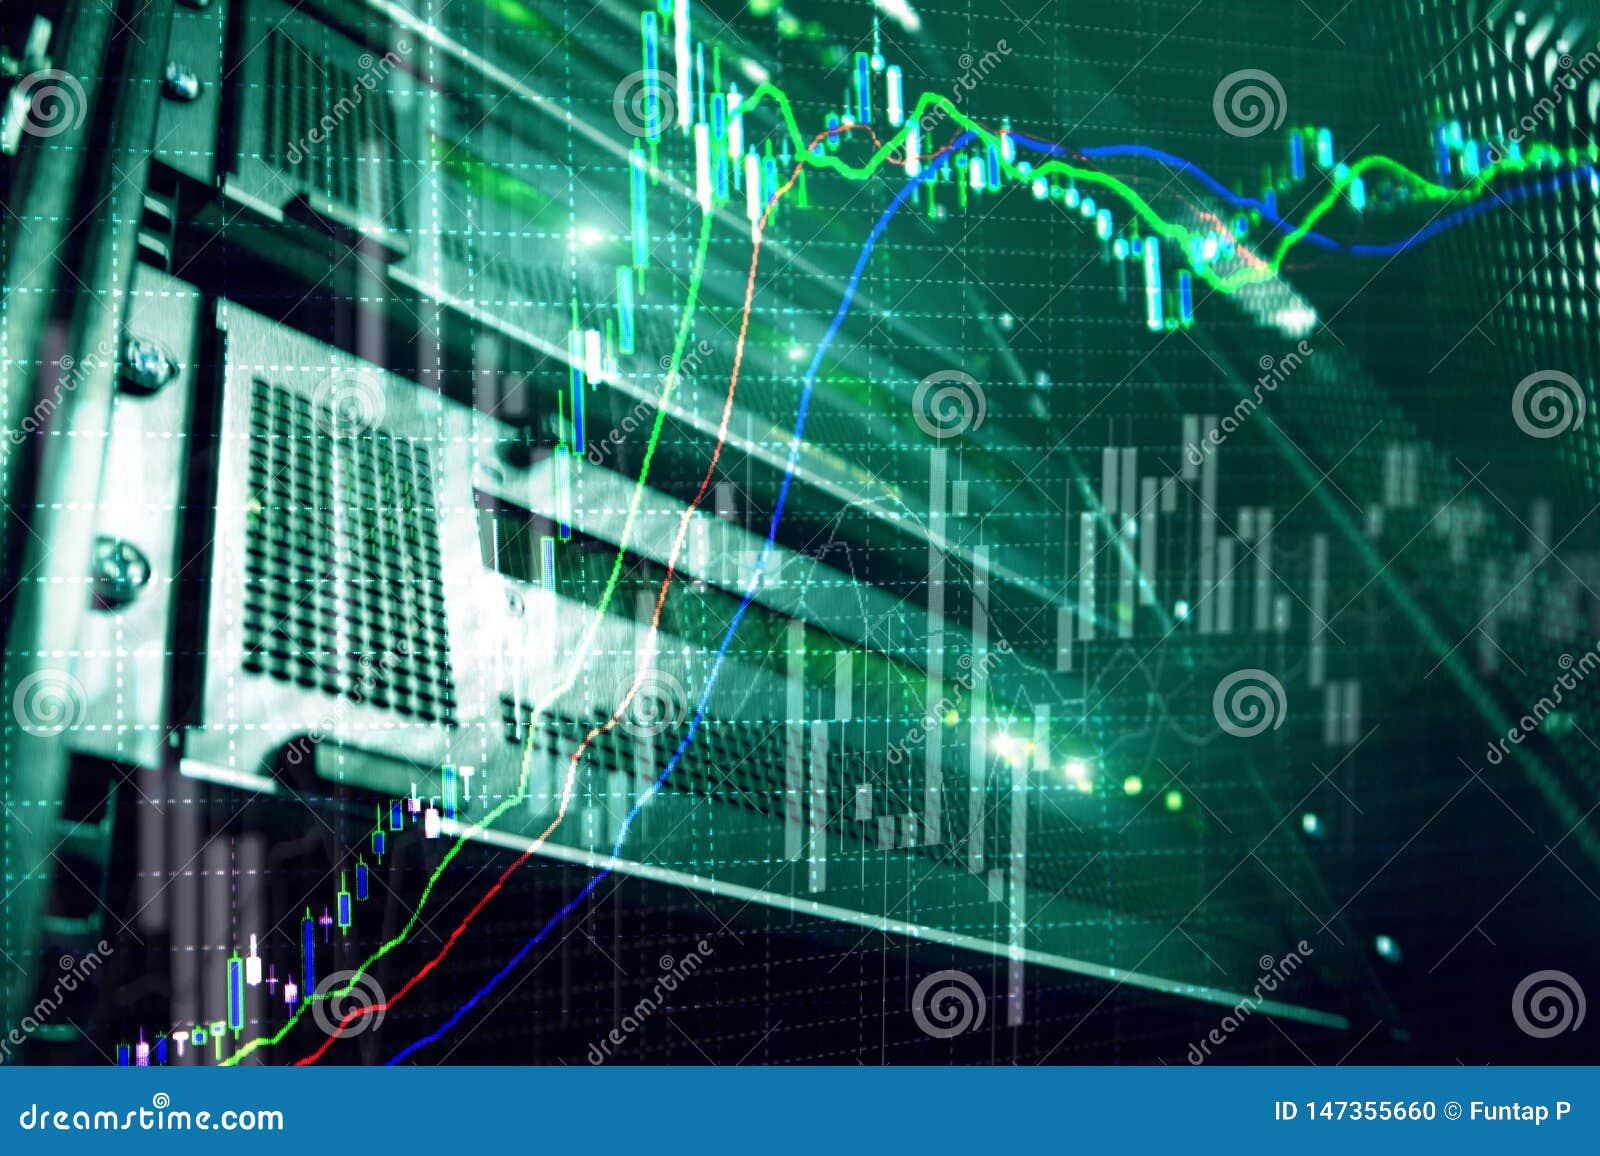 broker monitoring center. stock market management center. trading algorithms on server room